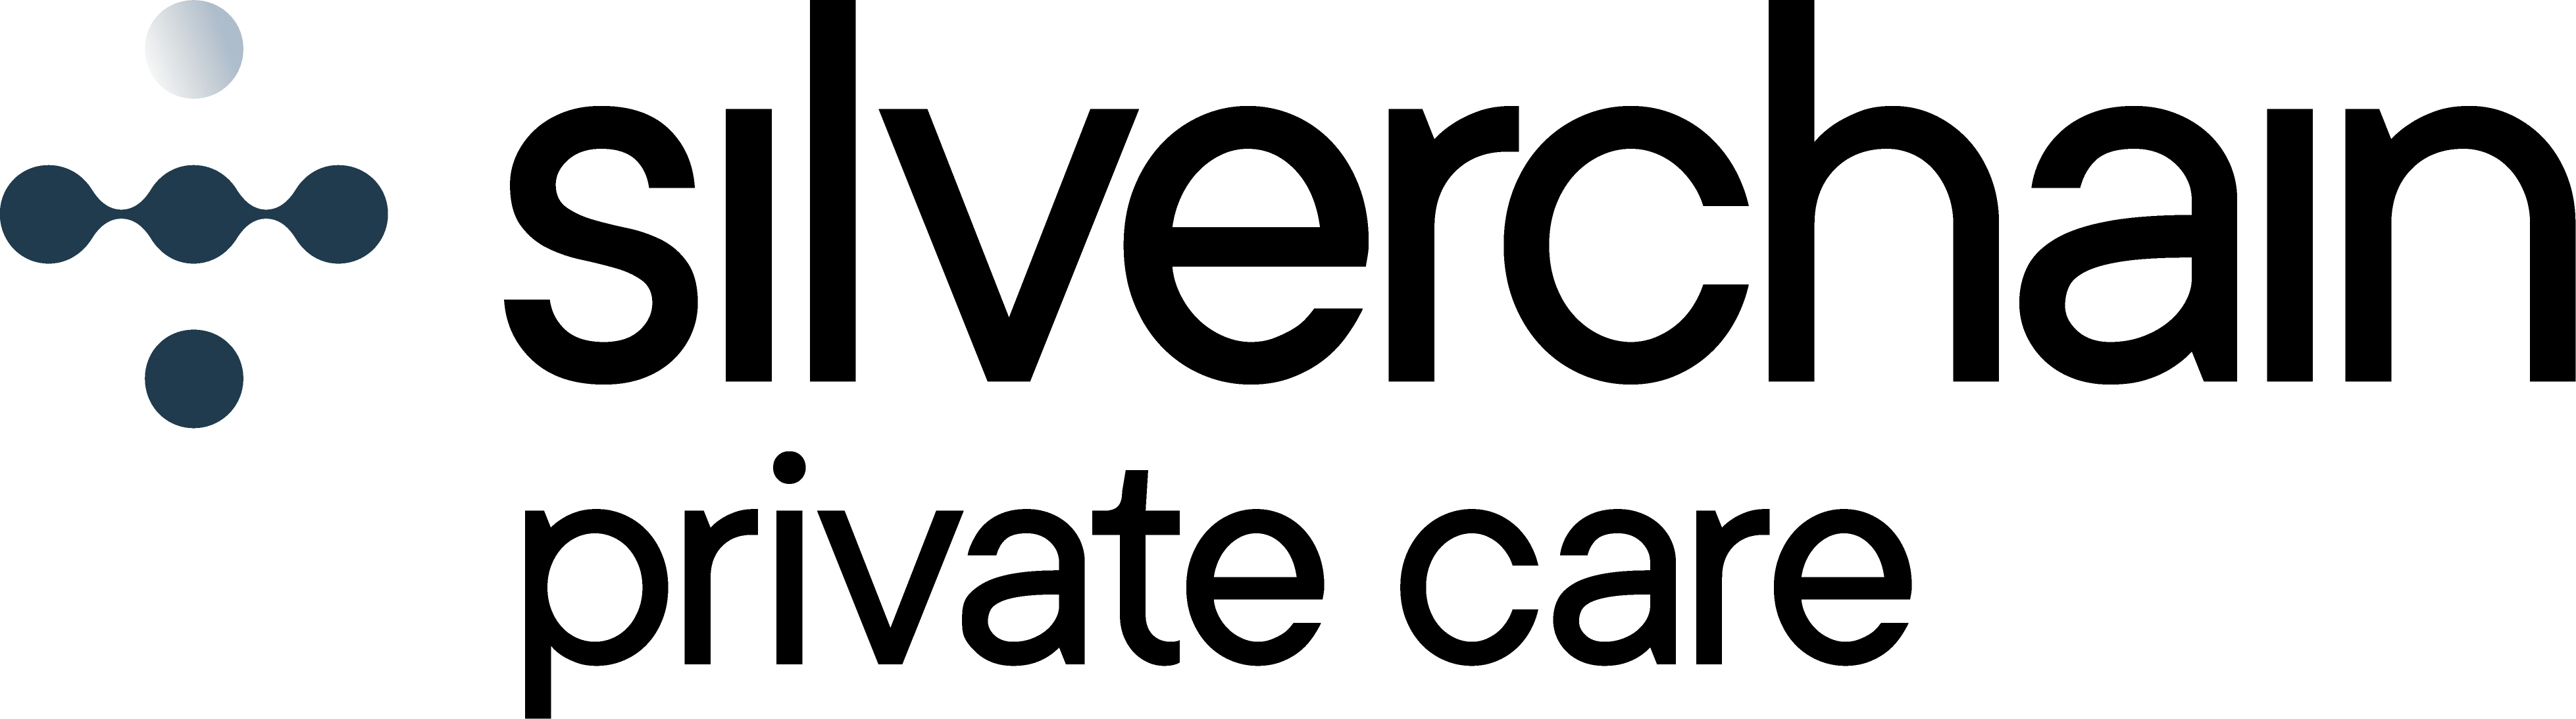 Silverchain Private logo